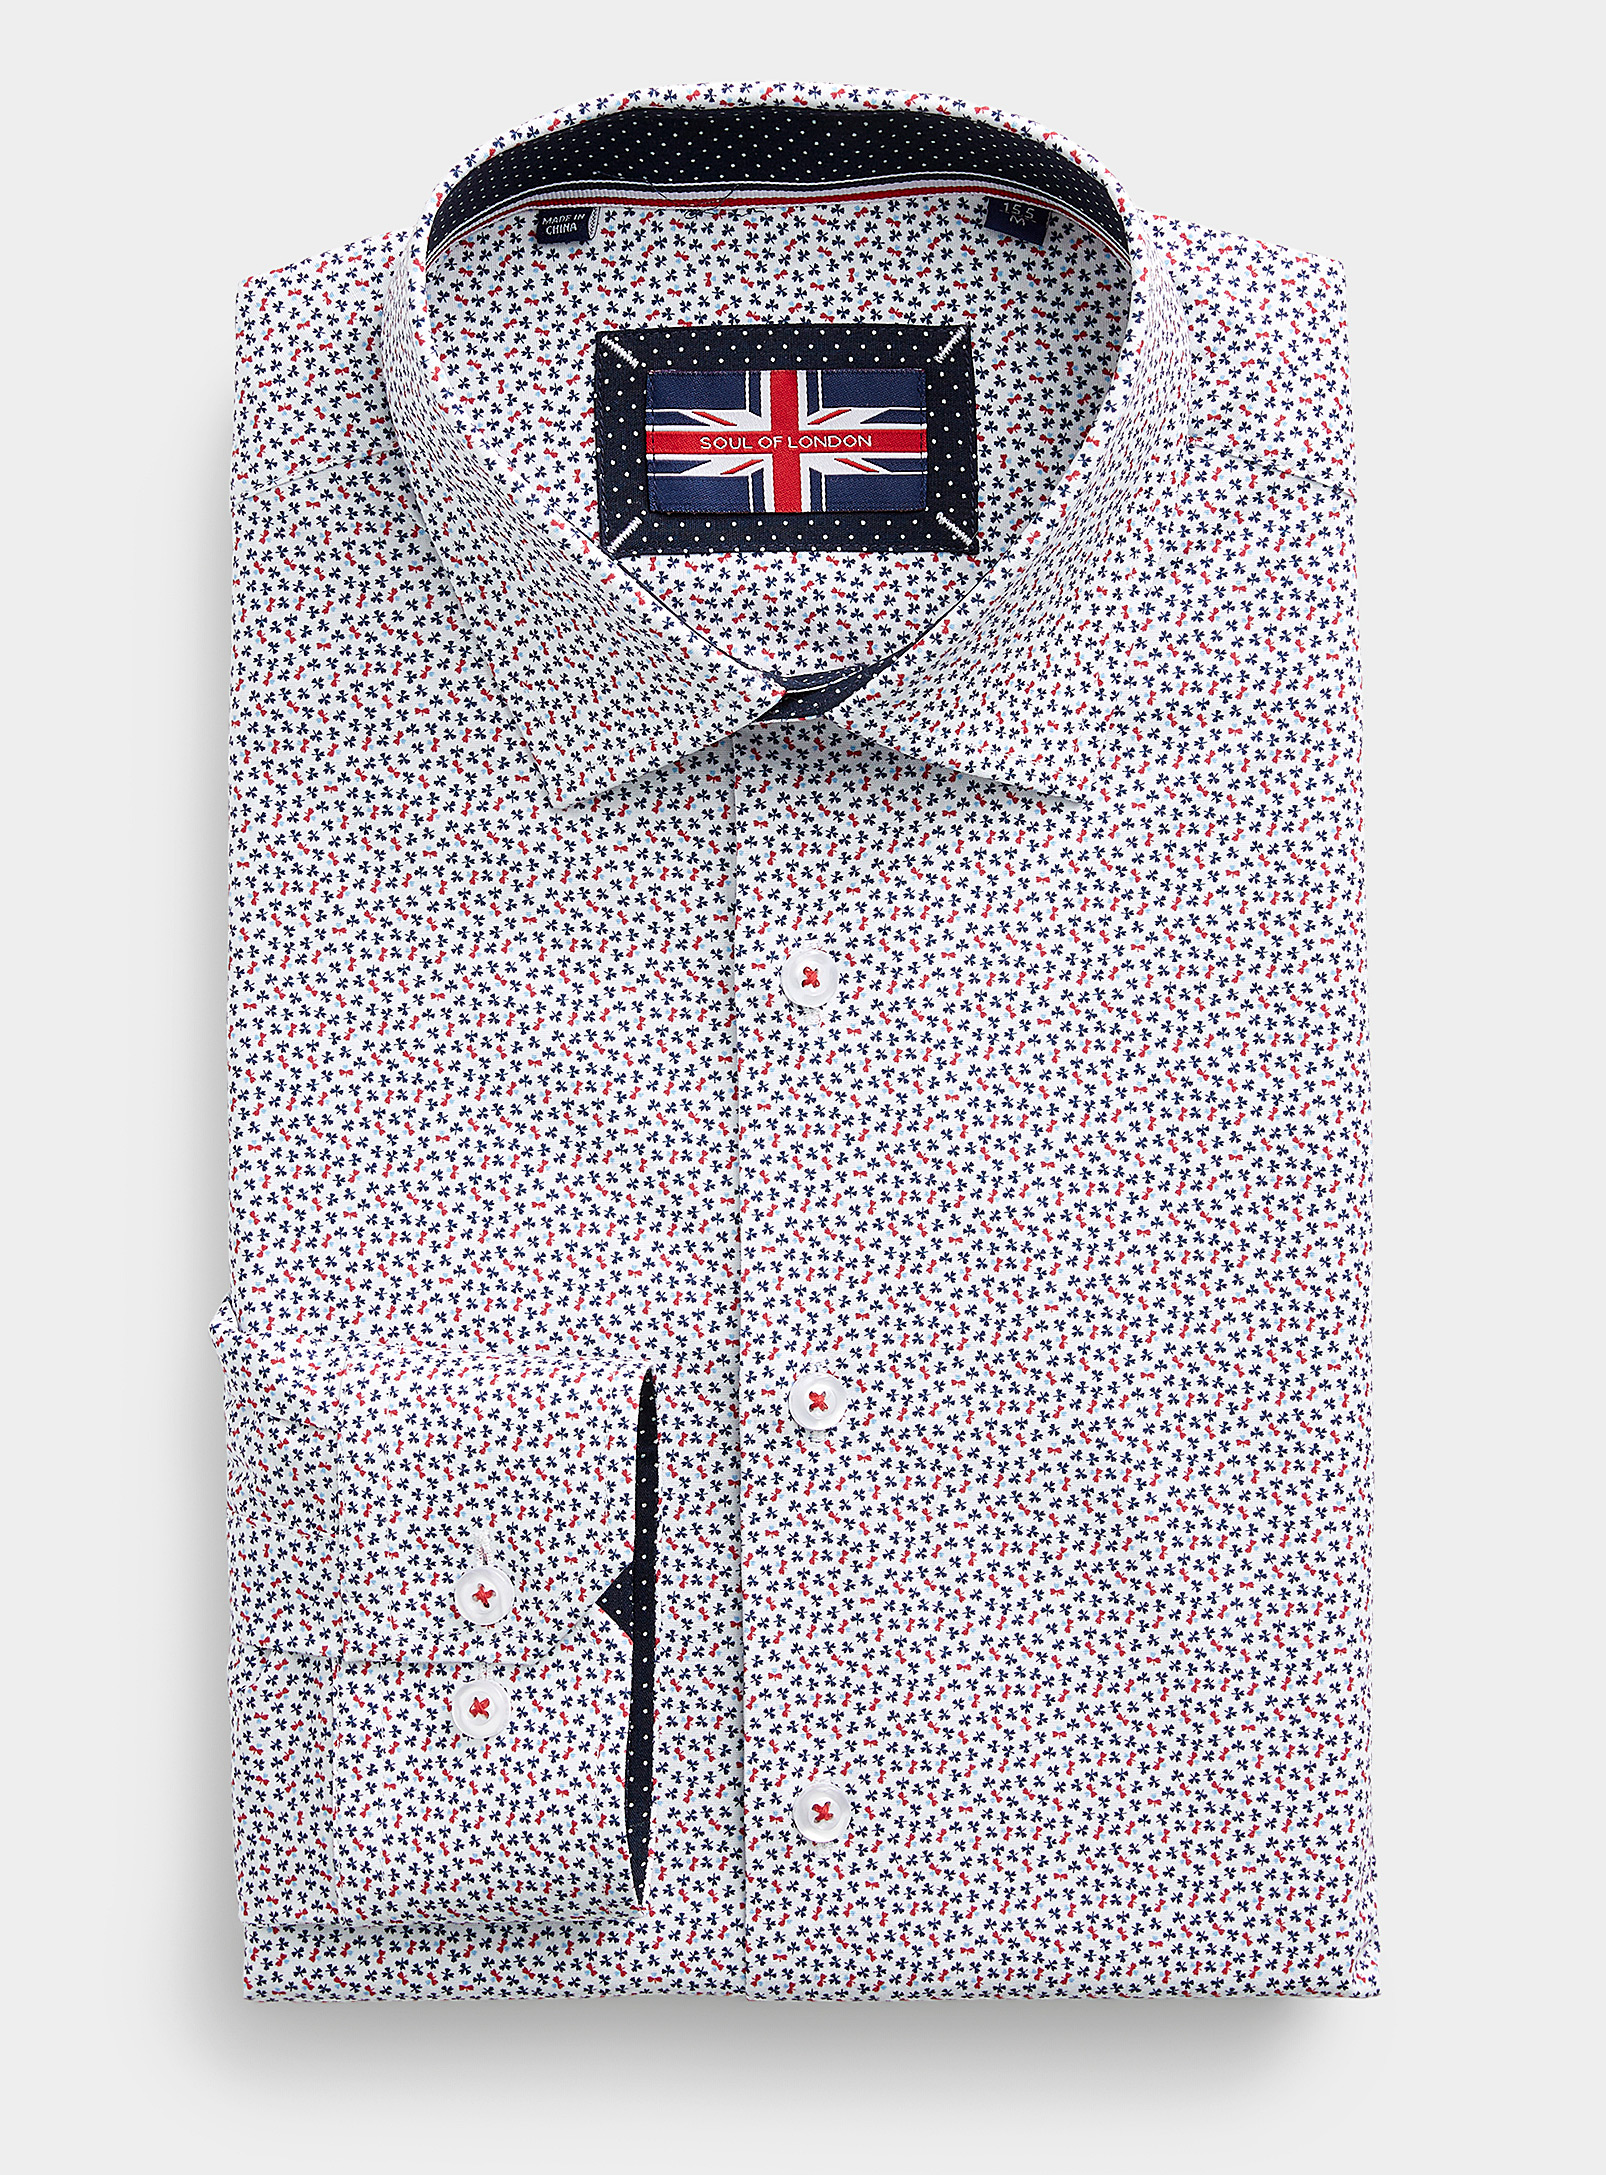 Soul of London - La chemise extensible trèfles colorés Coupe ajustée